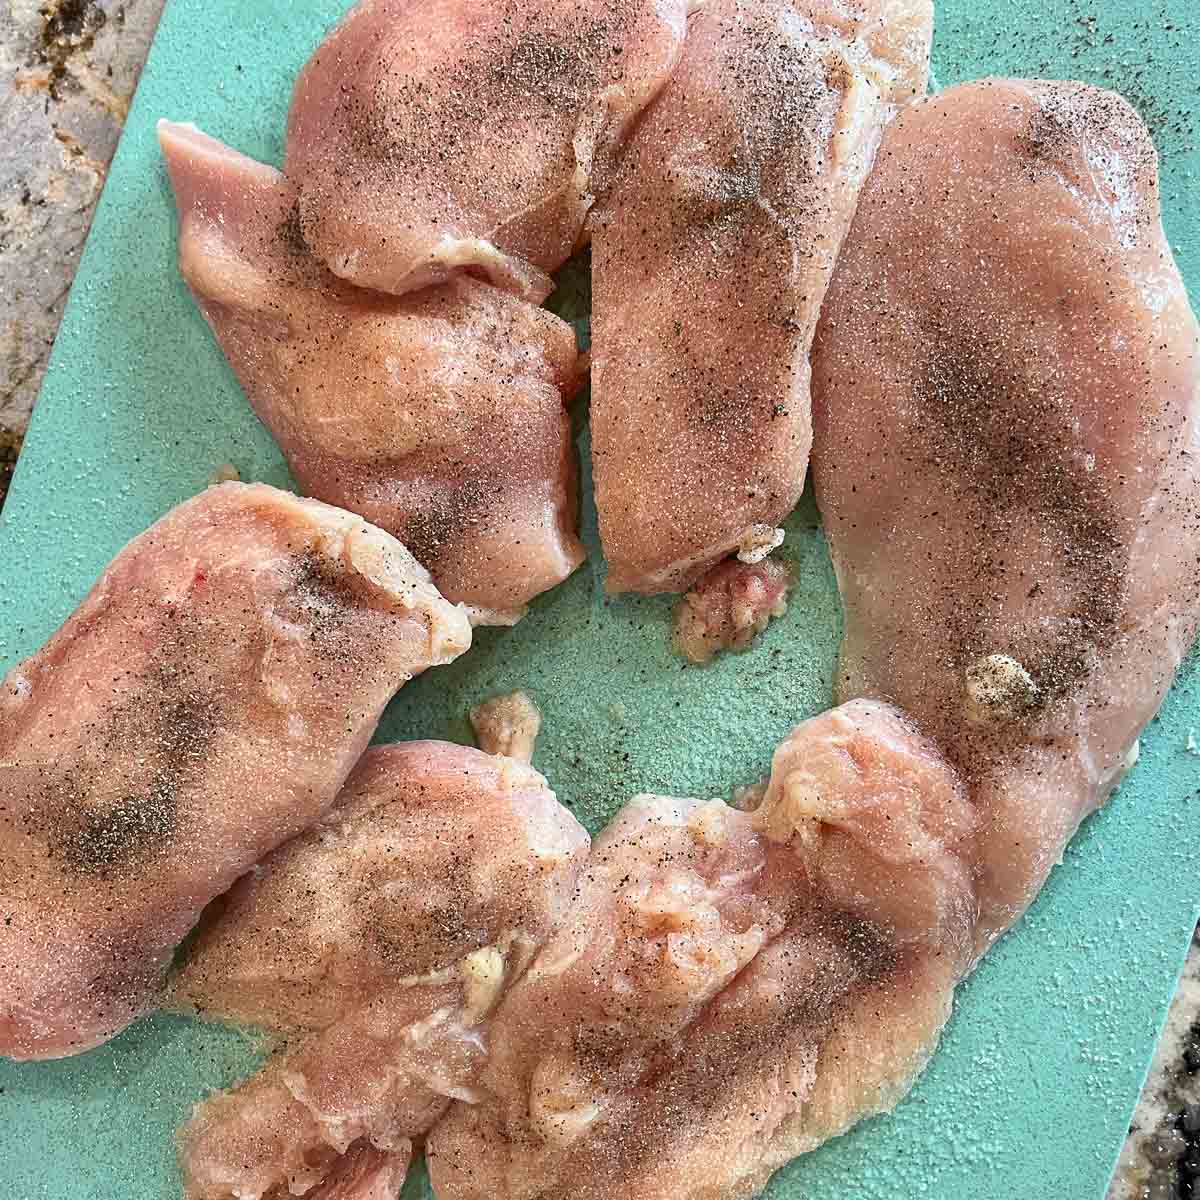 raw, seasoned chicken breast on a blue cutting board